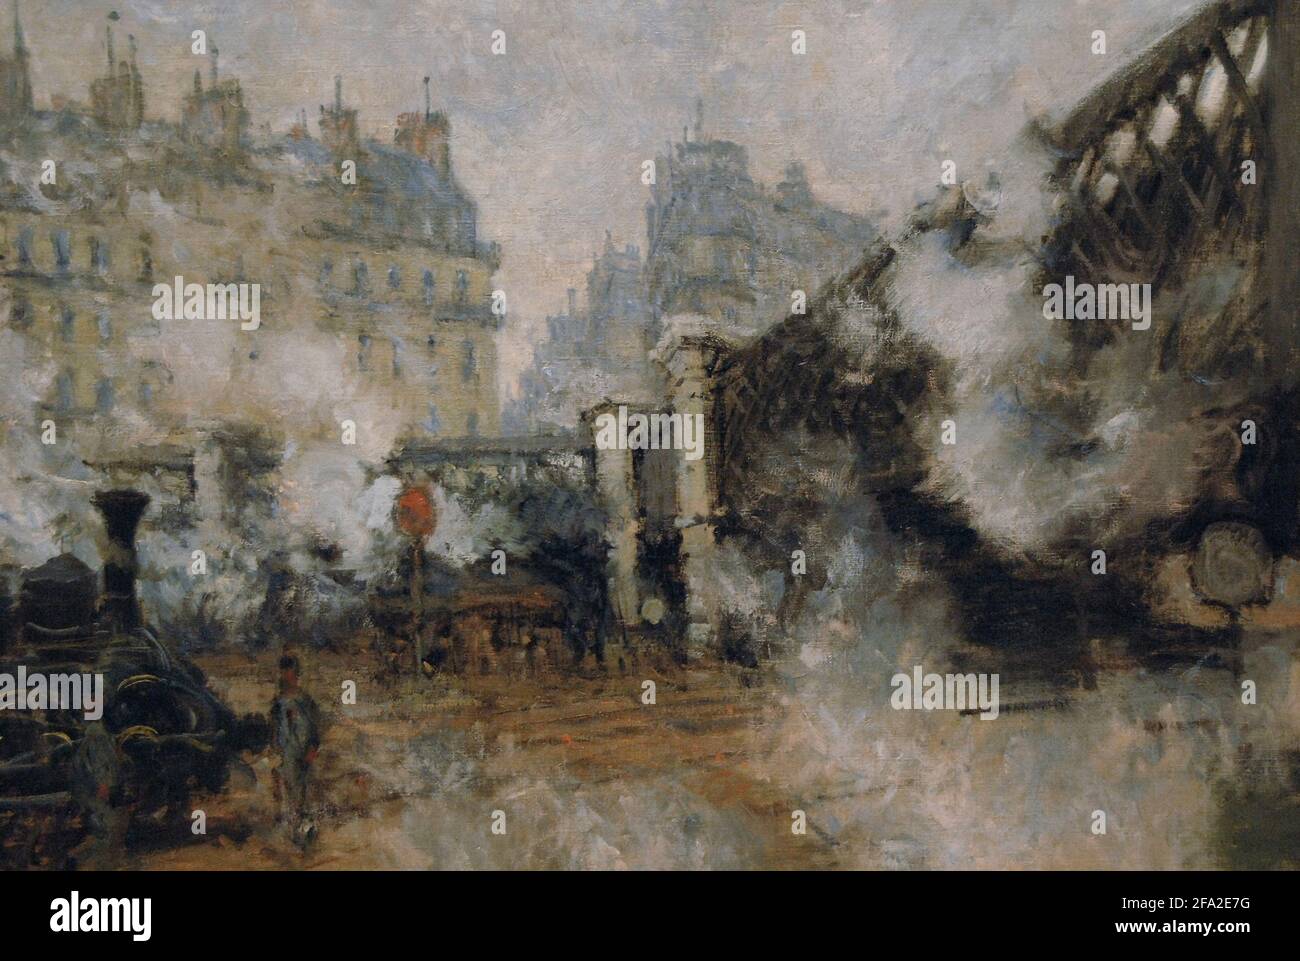 Claude Monet (1840-1926). Französischer impressionistischer Maler. Die Europabrücke, Bahnhof Saint Lazare, 1877. Marmottan Monet Museum. Paris. Frankreich. Stockfoto